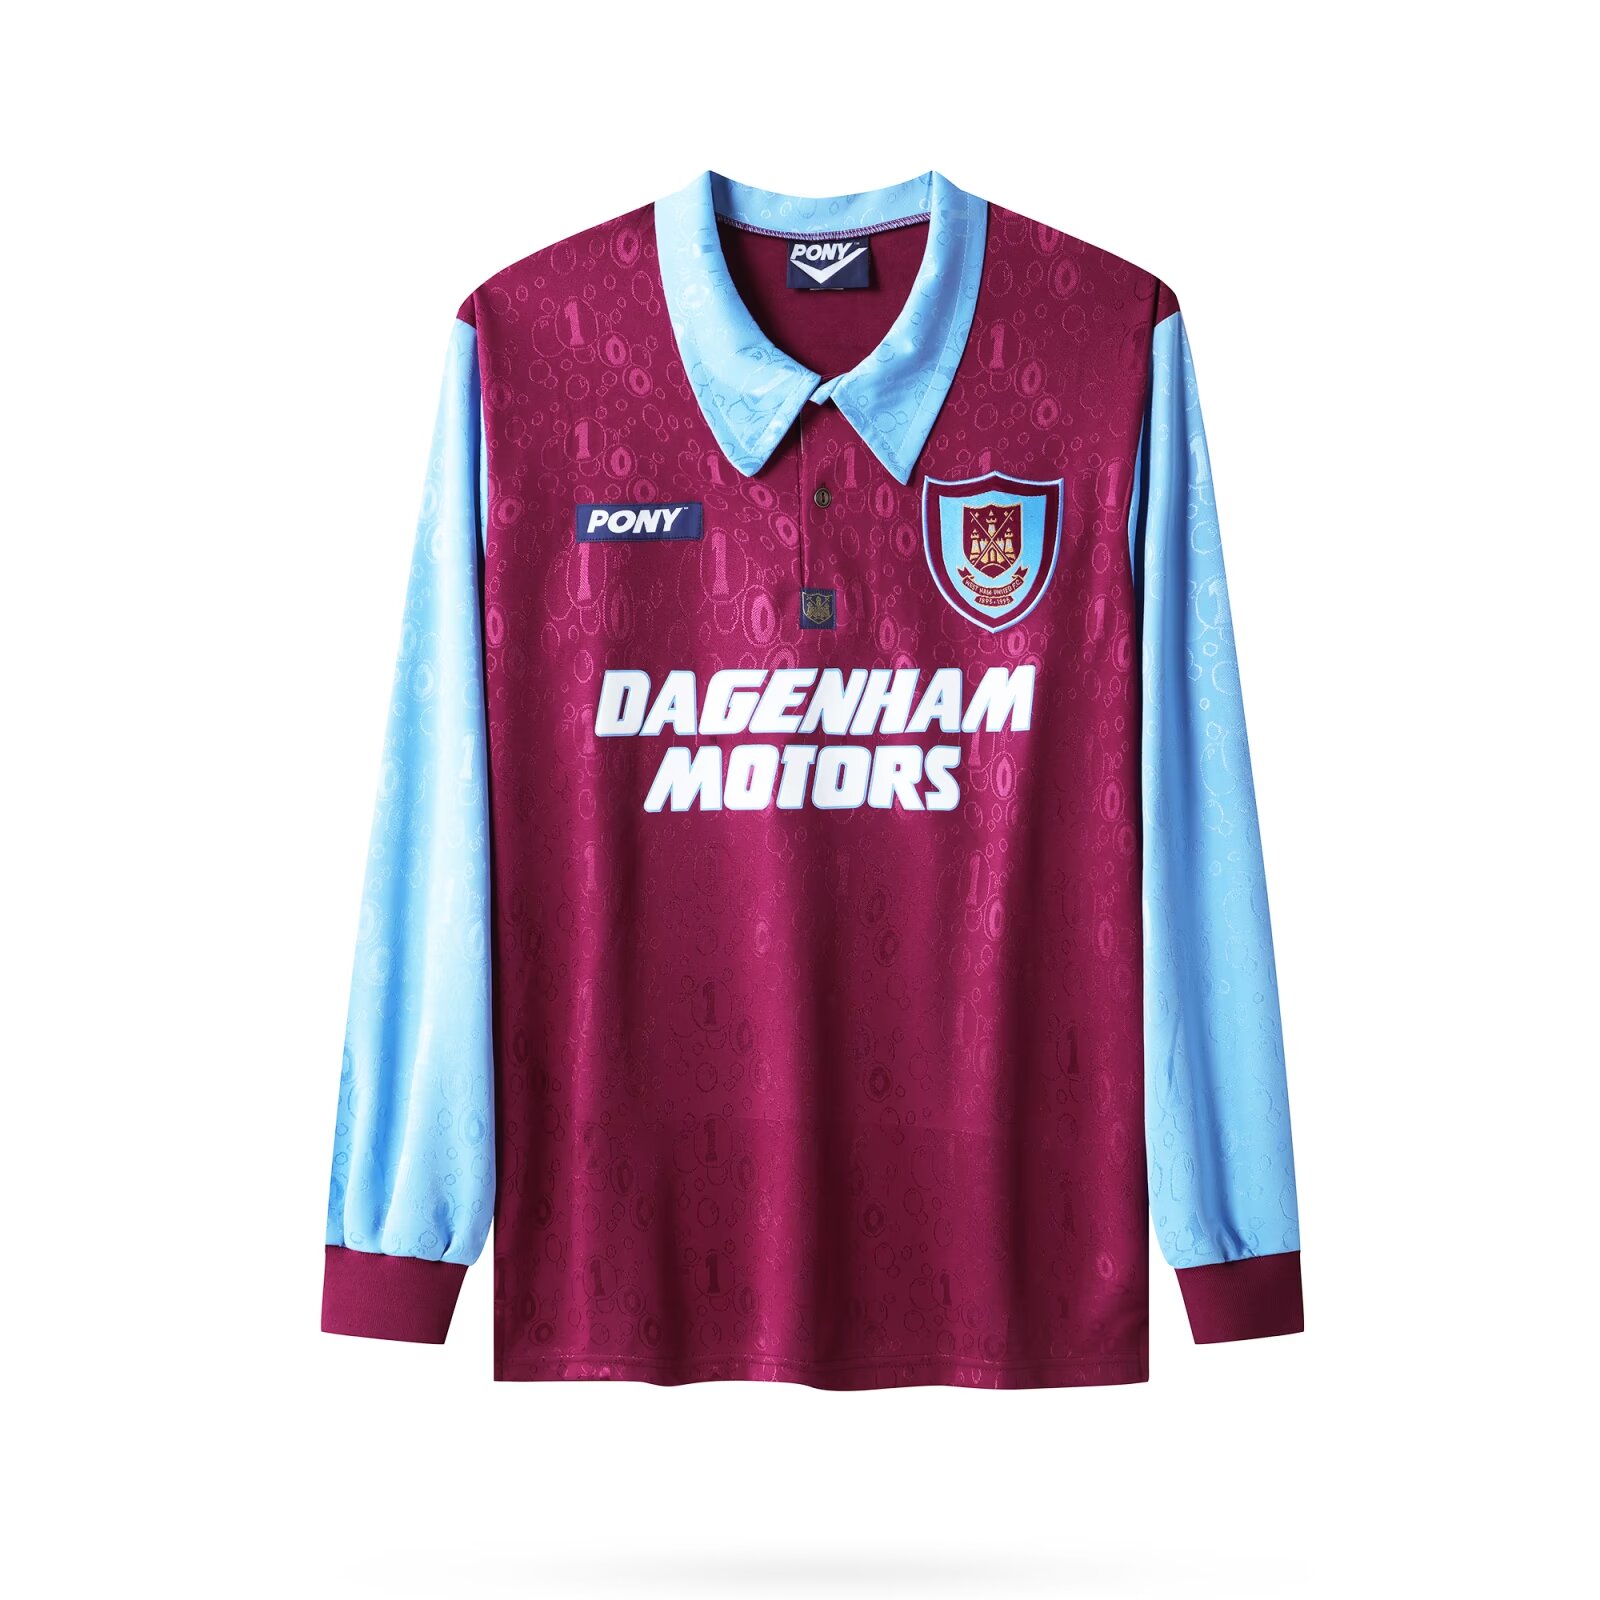 1995-1997 West Ham United Long sleeved retro